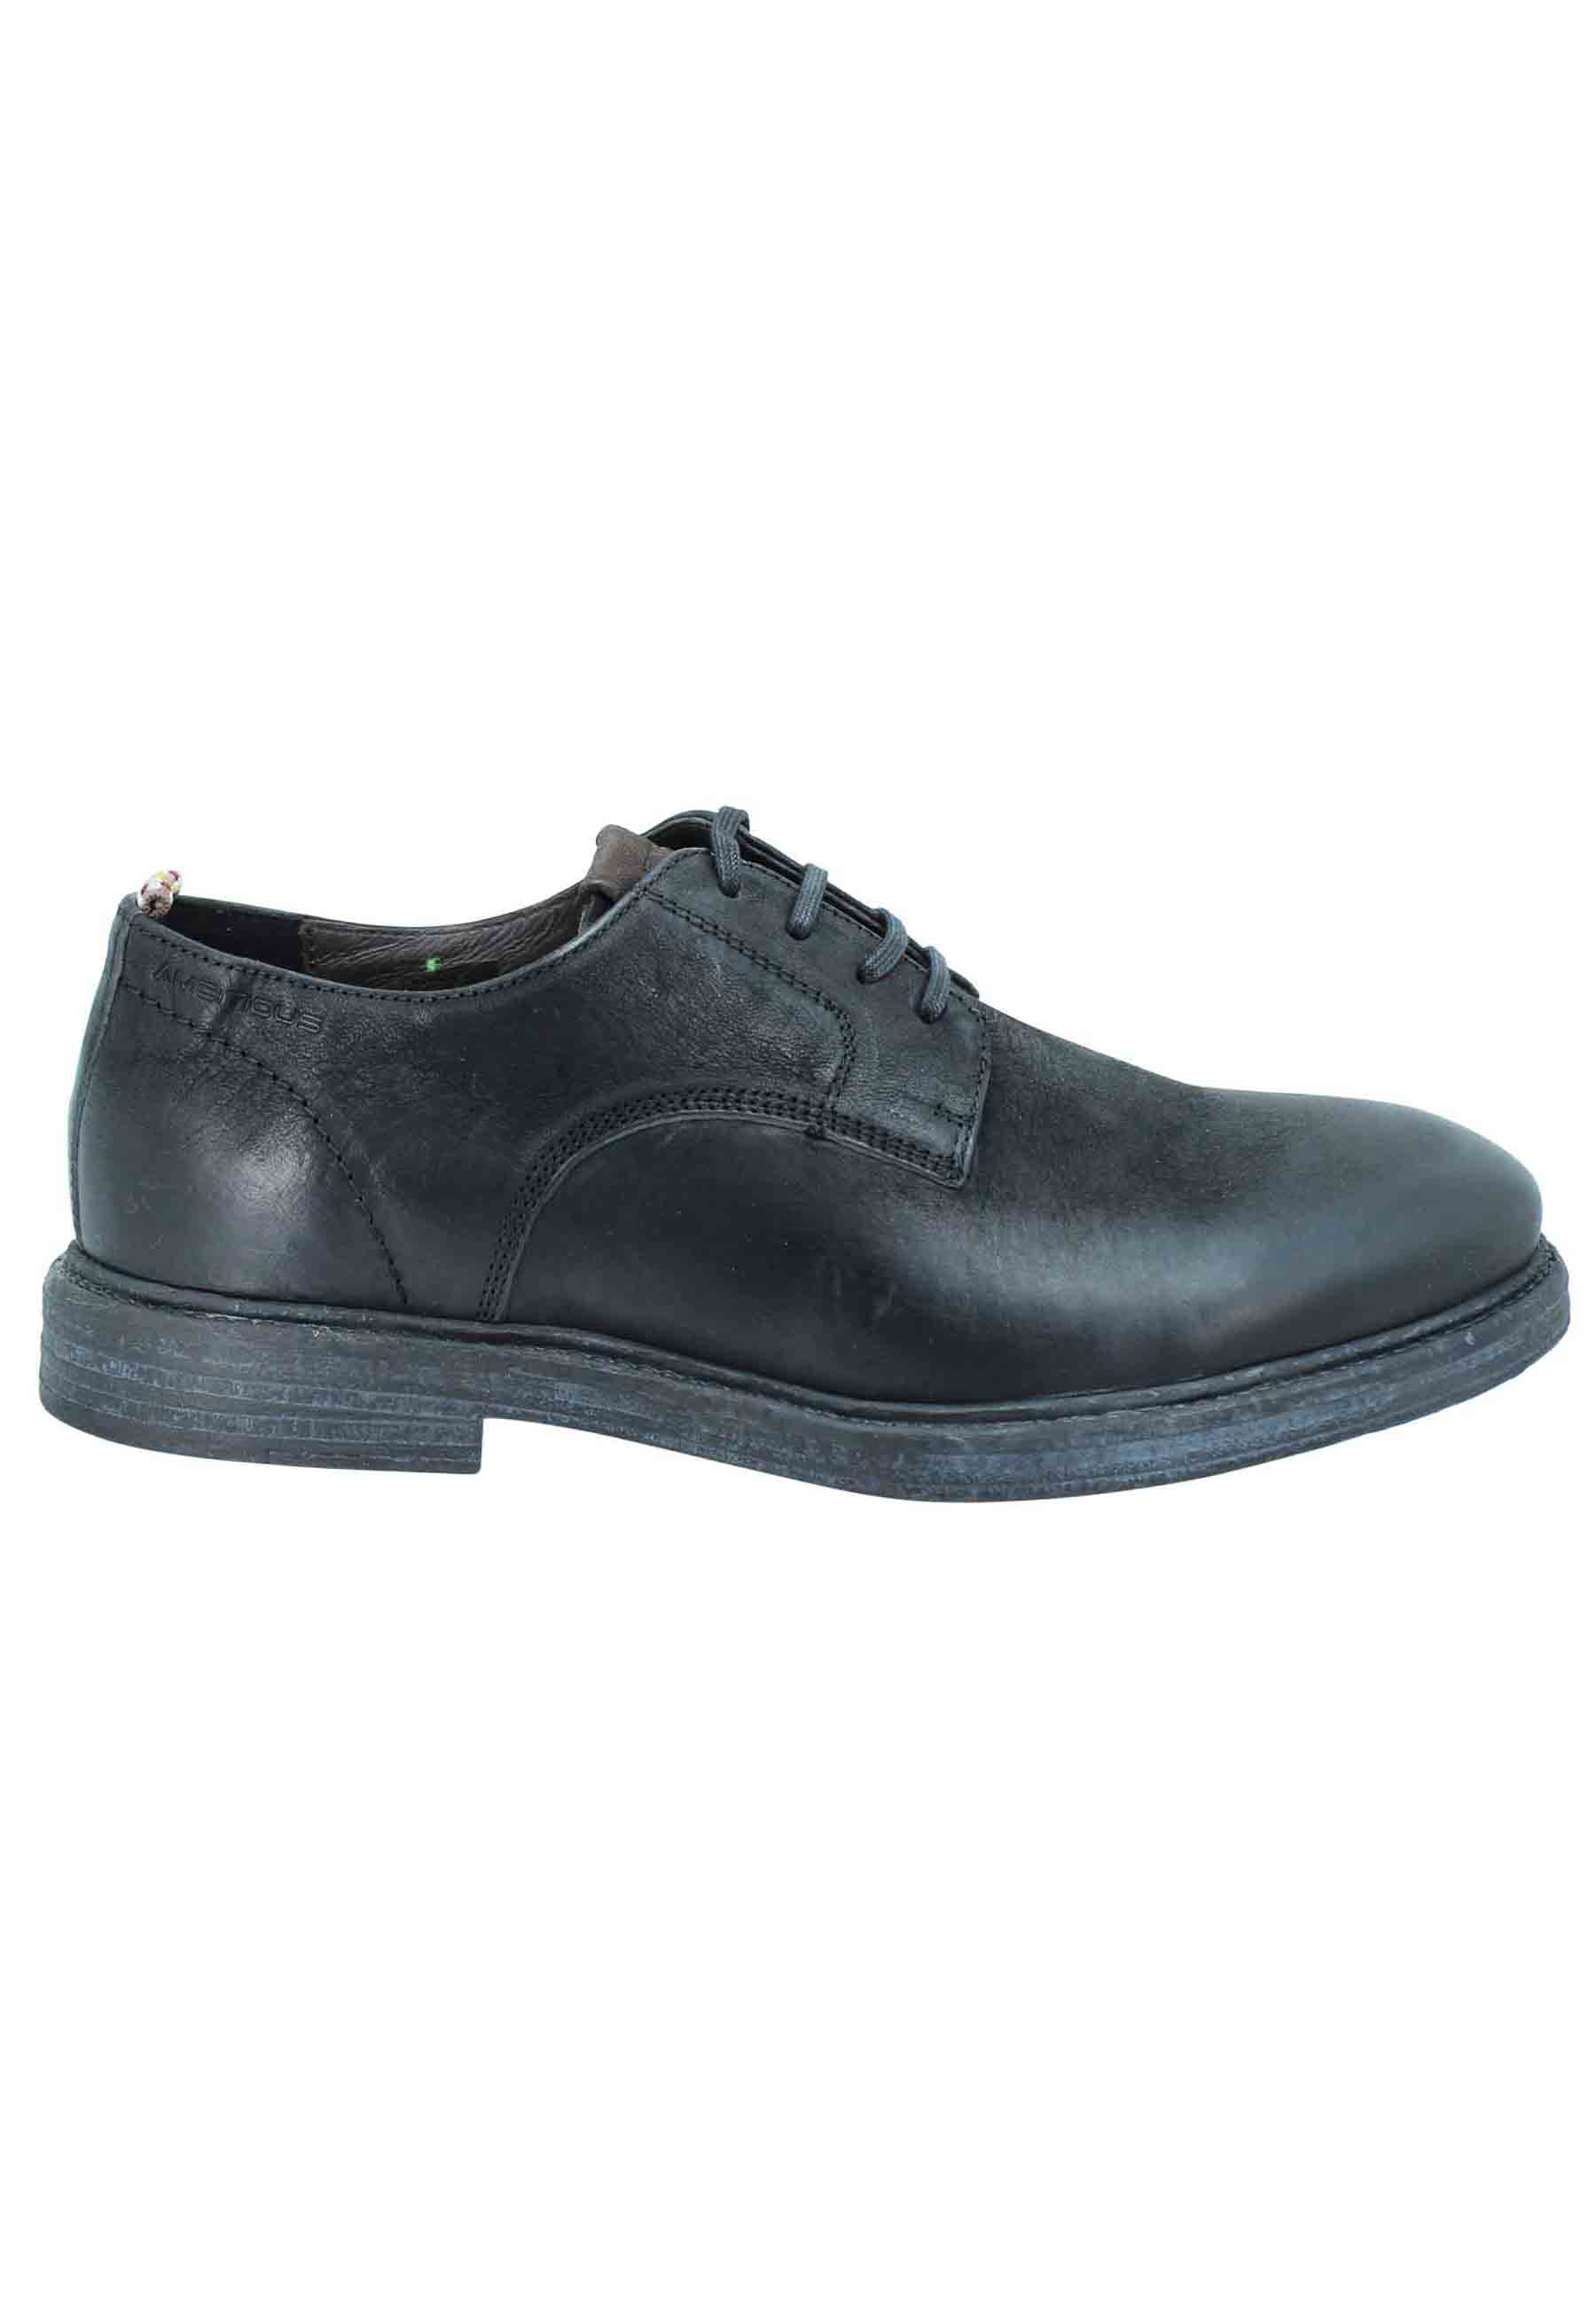 Chaussures à lacets pour hommes en cuir noir, semelle en caoutchouc et semelle intérieure à mémoire de forme